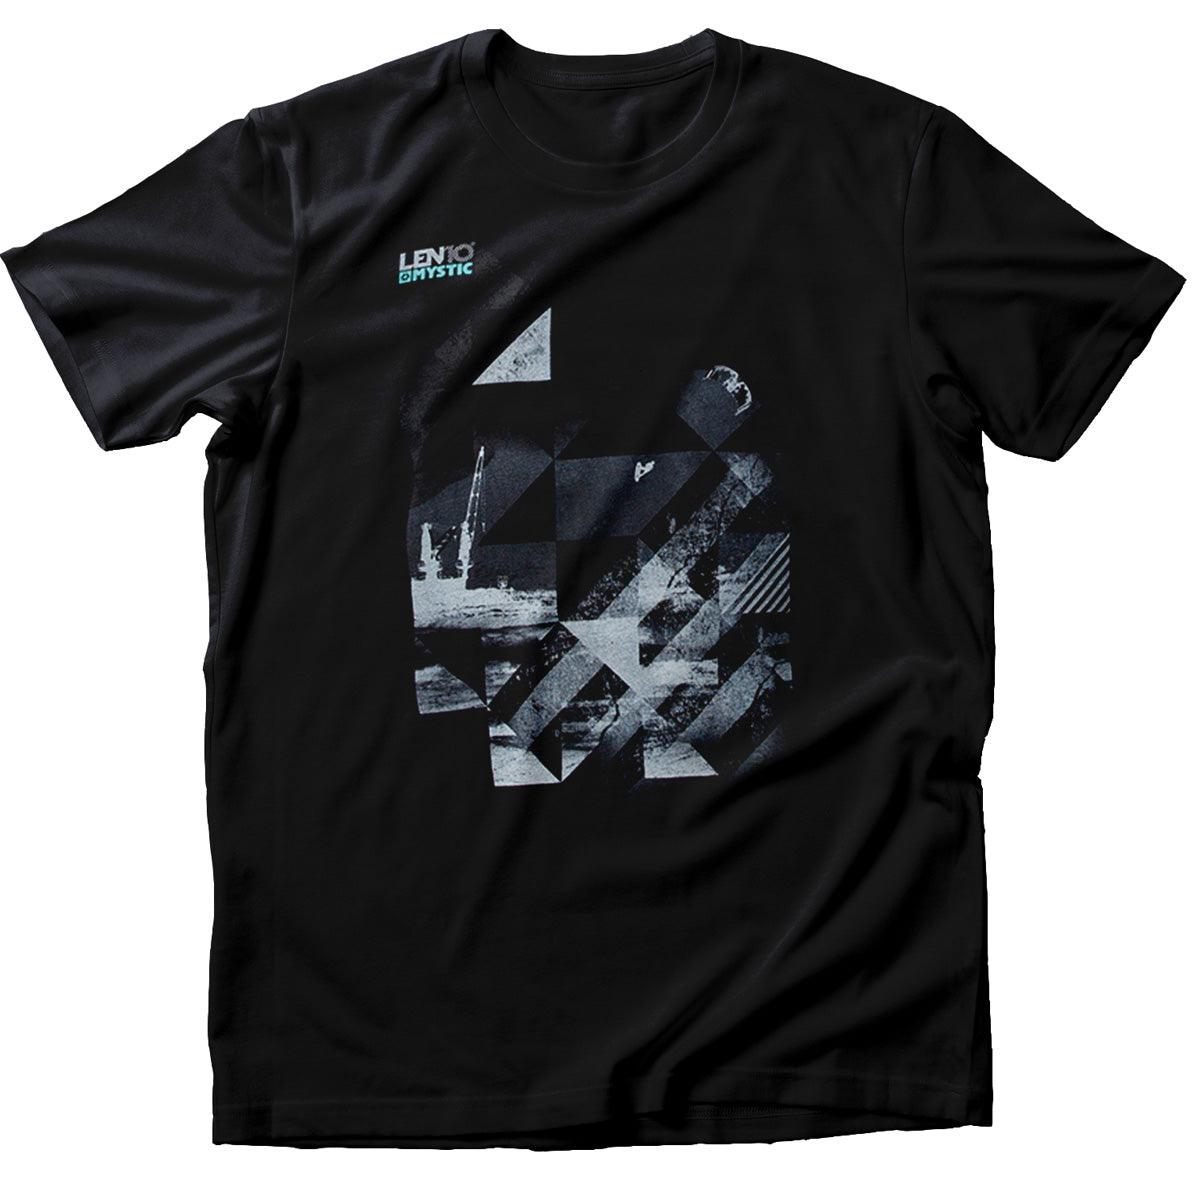 Mystic Len10 Kite T-Shirt - Kiteshop.com